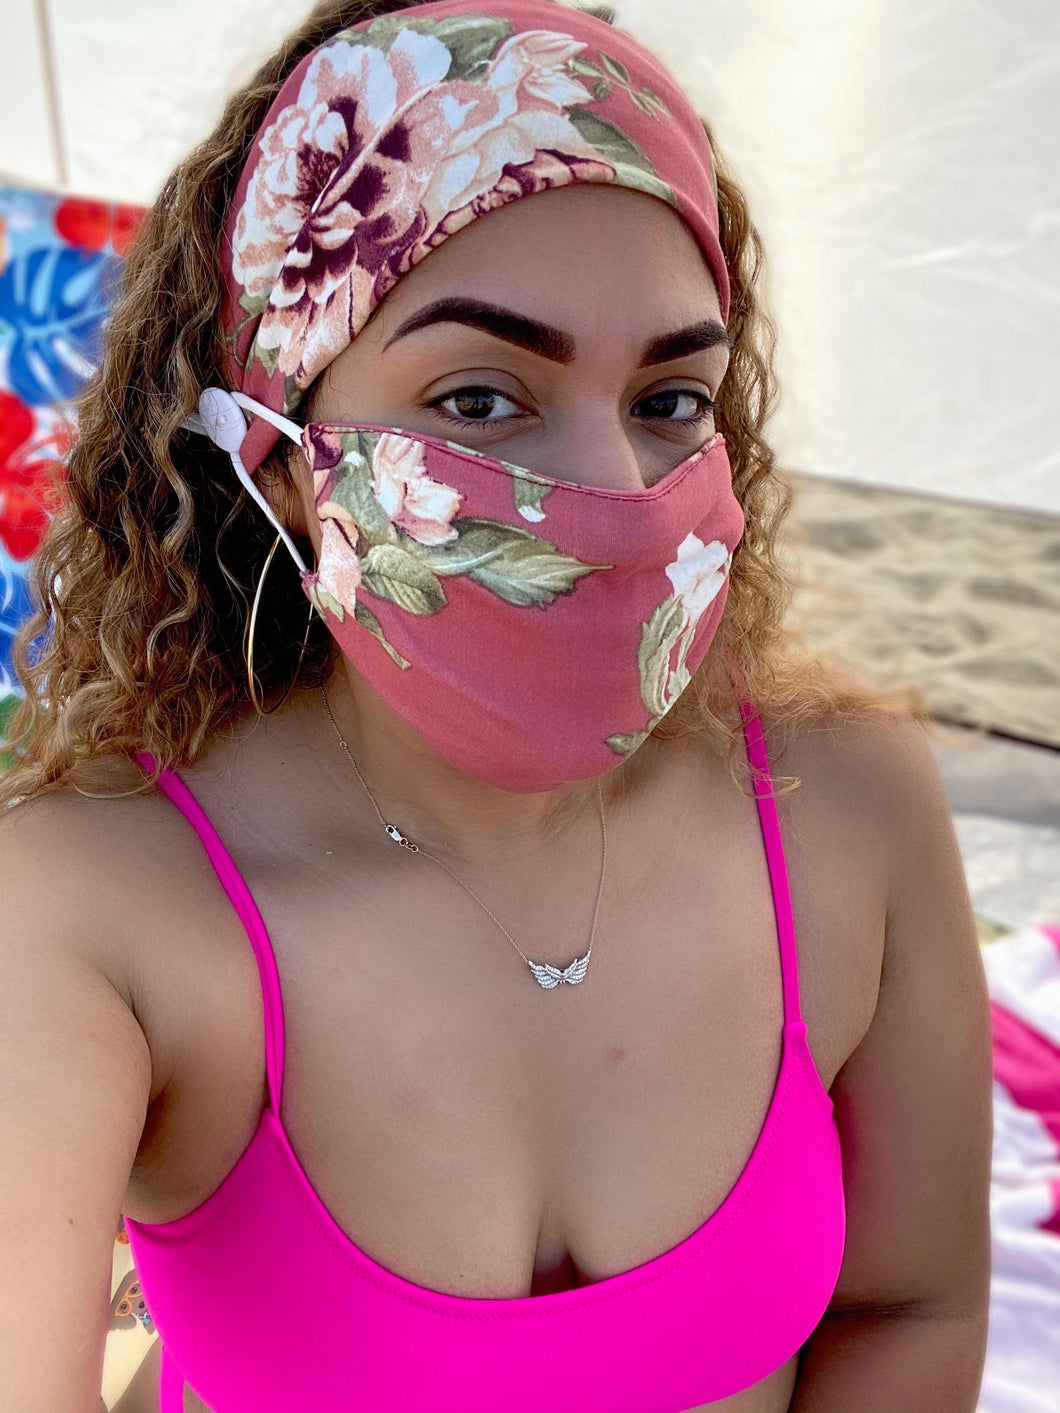 Pink Lily Headband and Mask Set